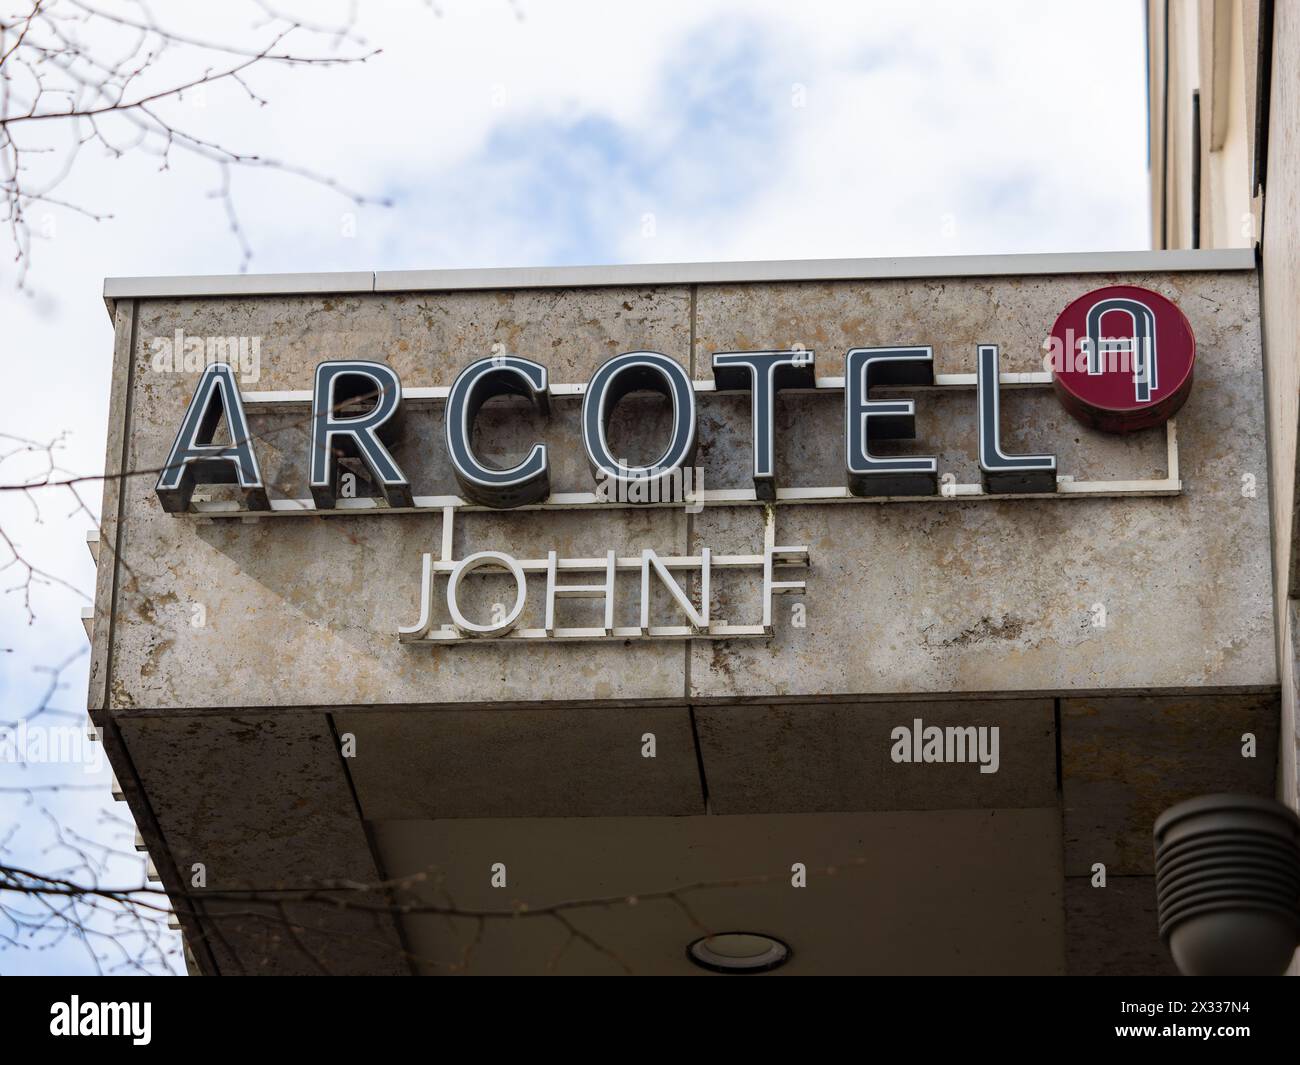 Das Arcotel John F-Logo befindet sich außen am Gebäude. Boutique-Hotel für wohlhabende Leute in der Nähe des Hackesche Markts. Gastgewerbe in der Stadt. Stockfoto